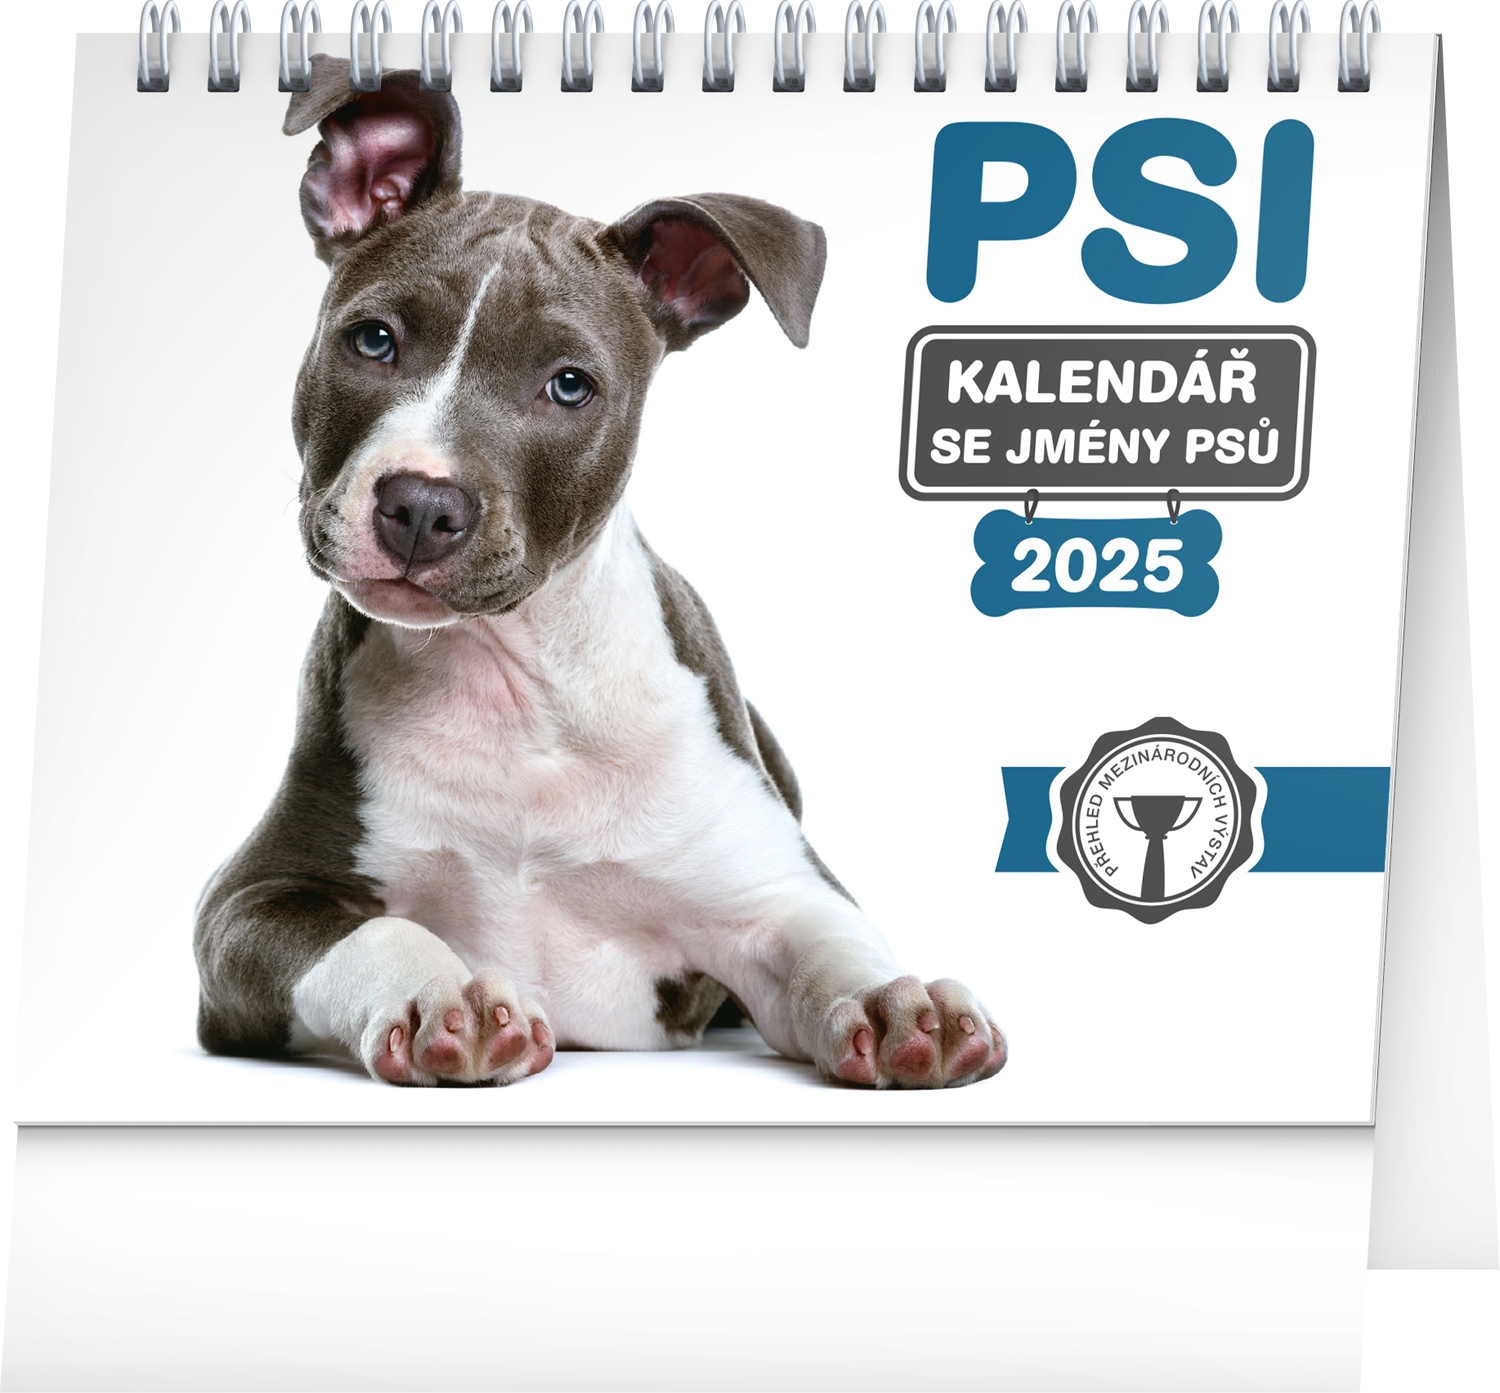 Stolní kalendář Psi - se jmény psů 2025